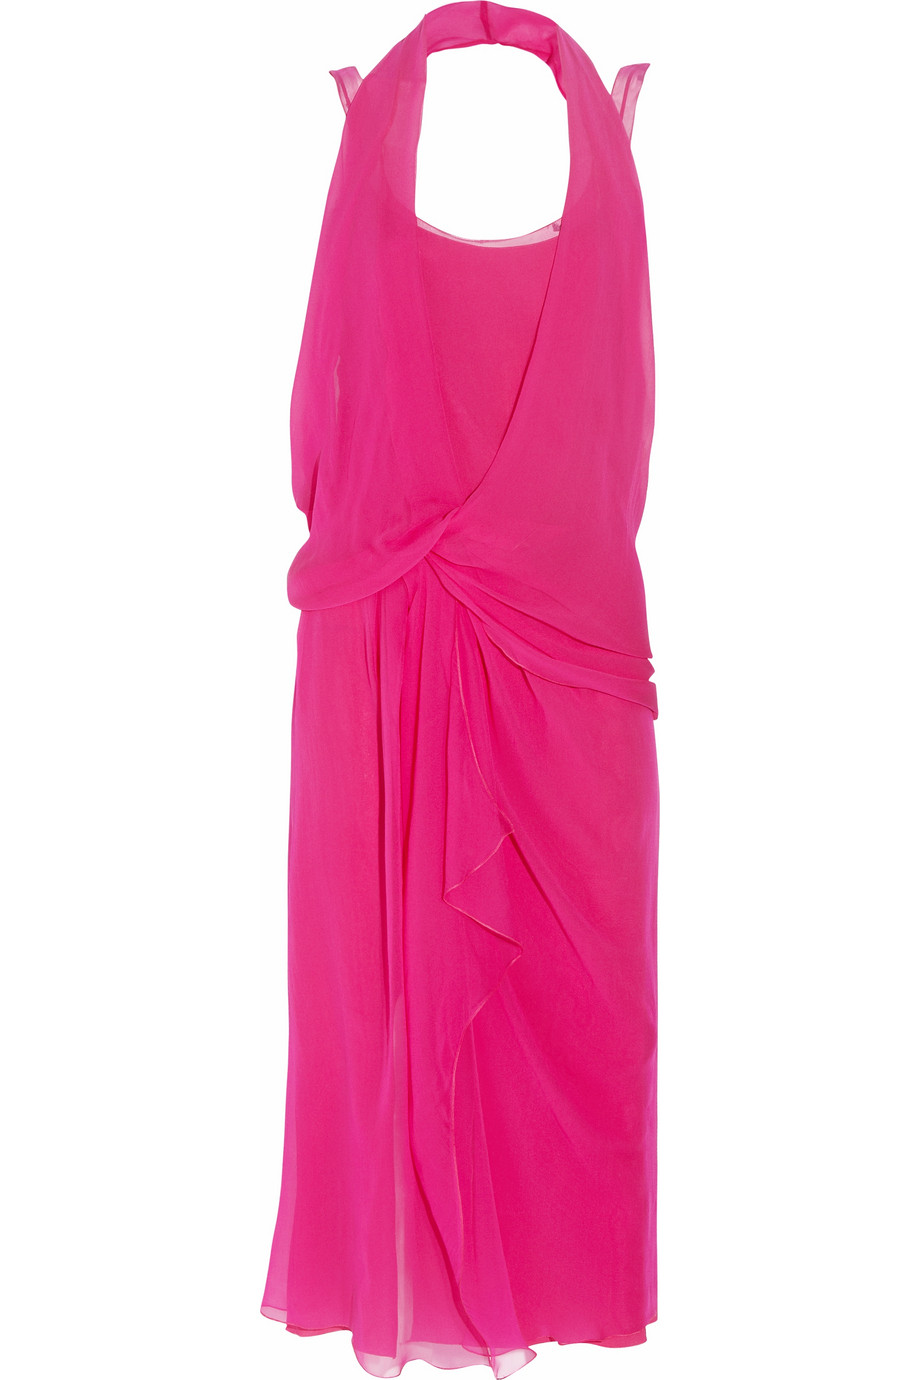 Lyst - Alberta Ferretti Draped Silk-chiffon Dress in Purple